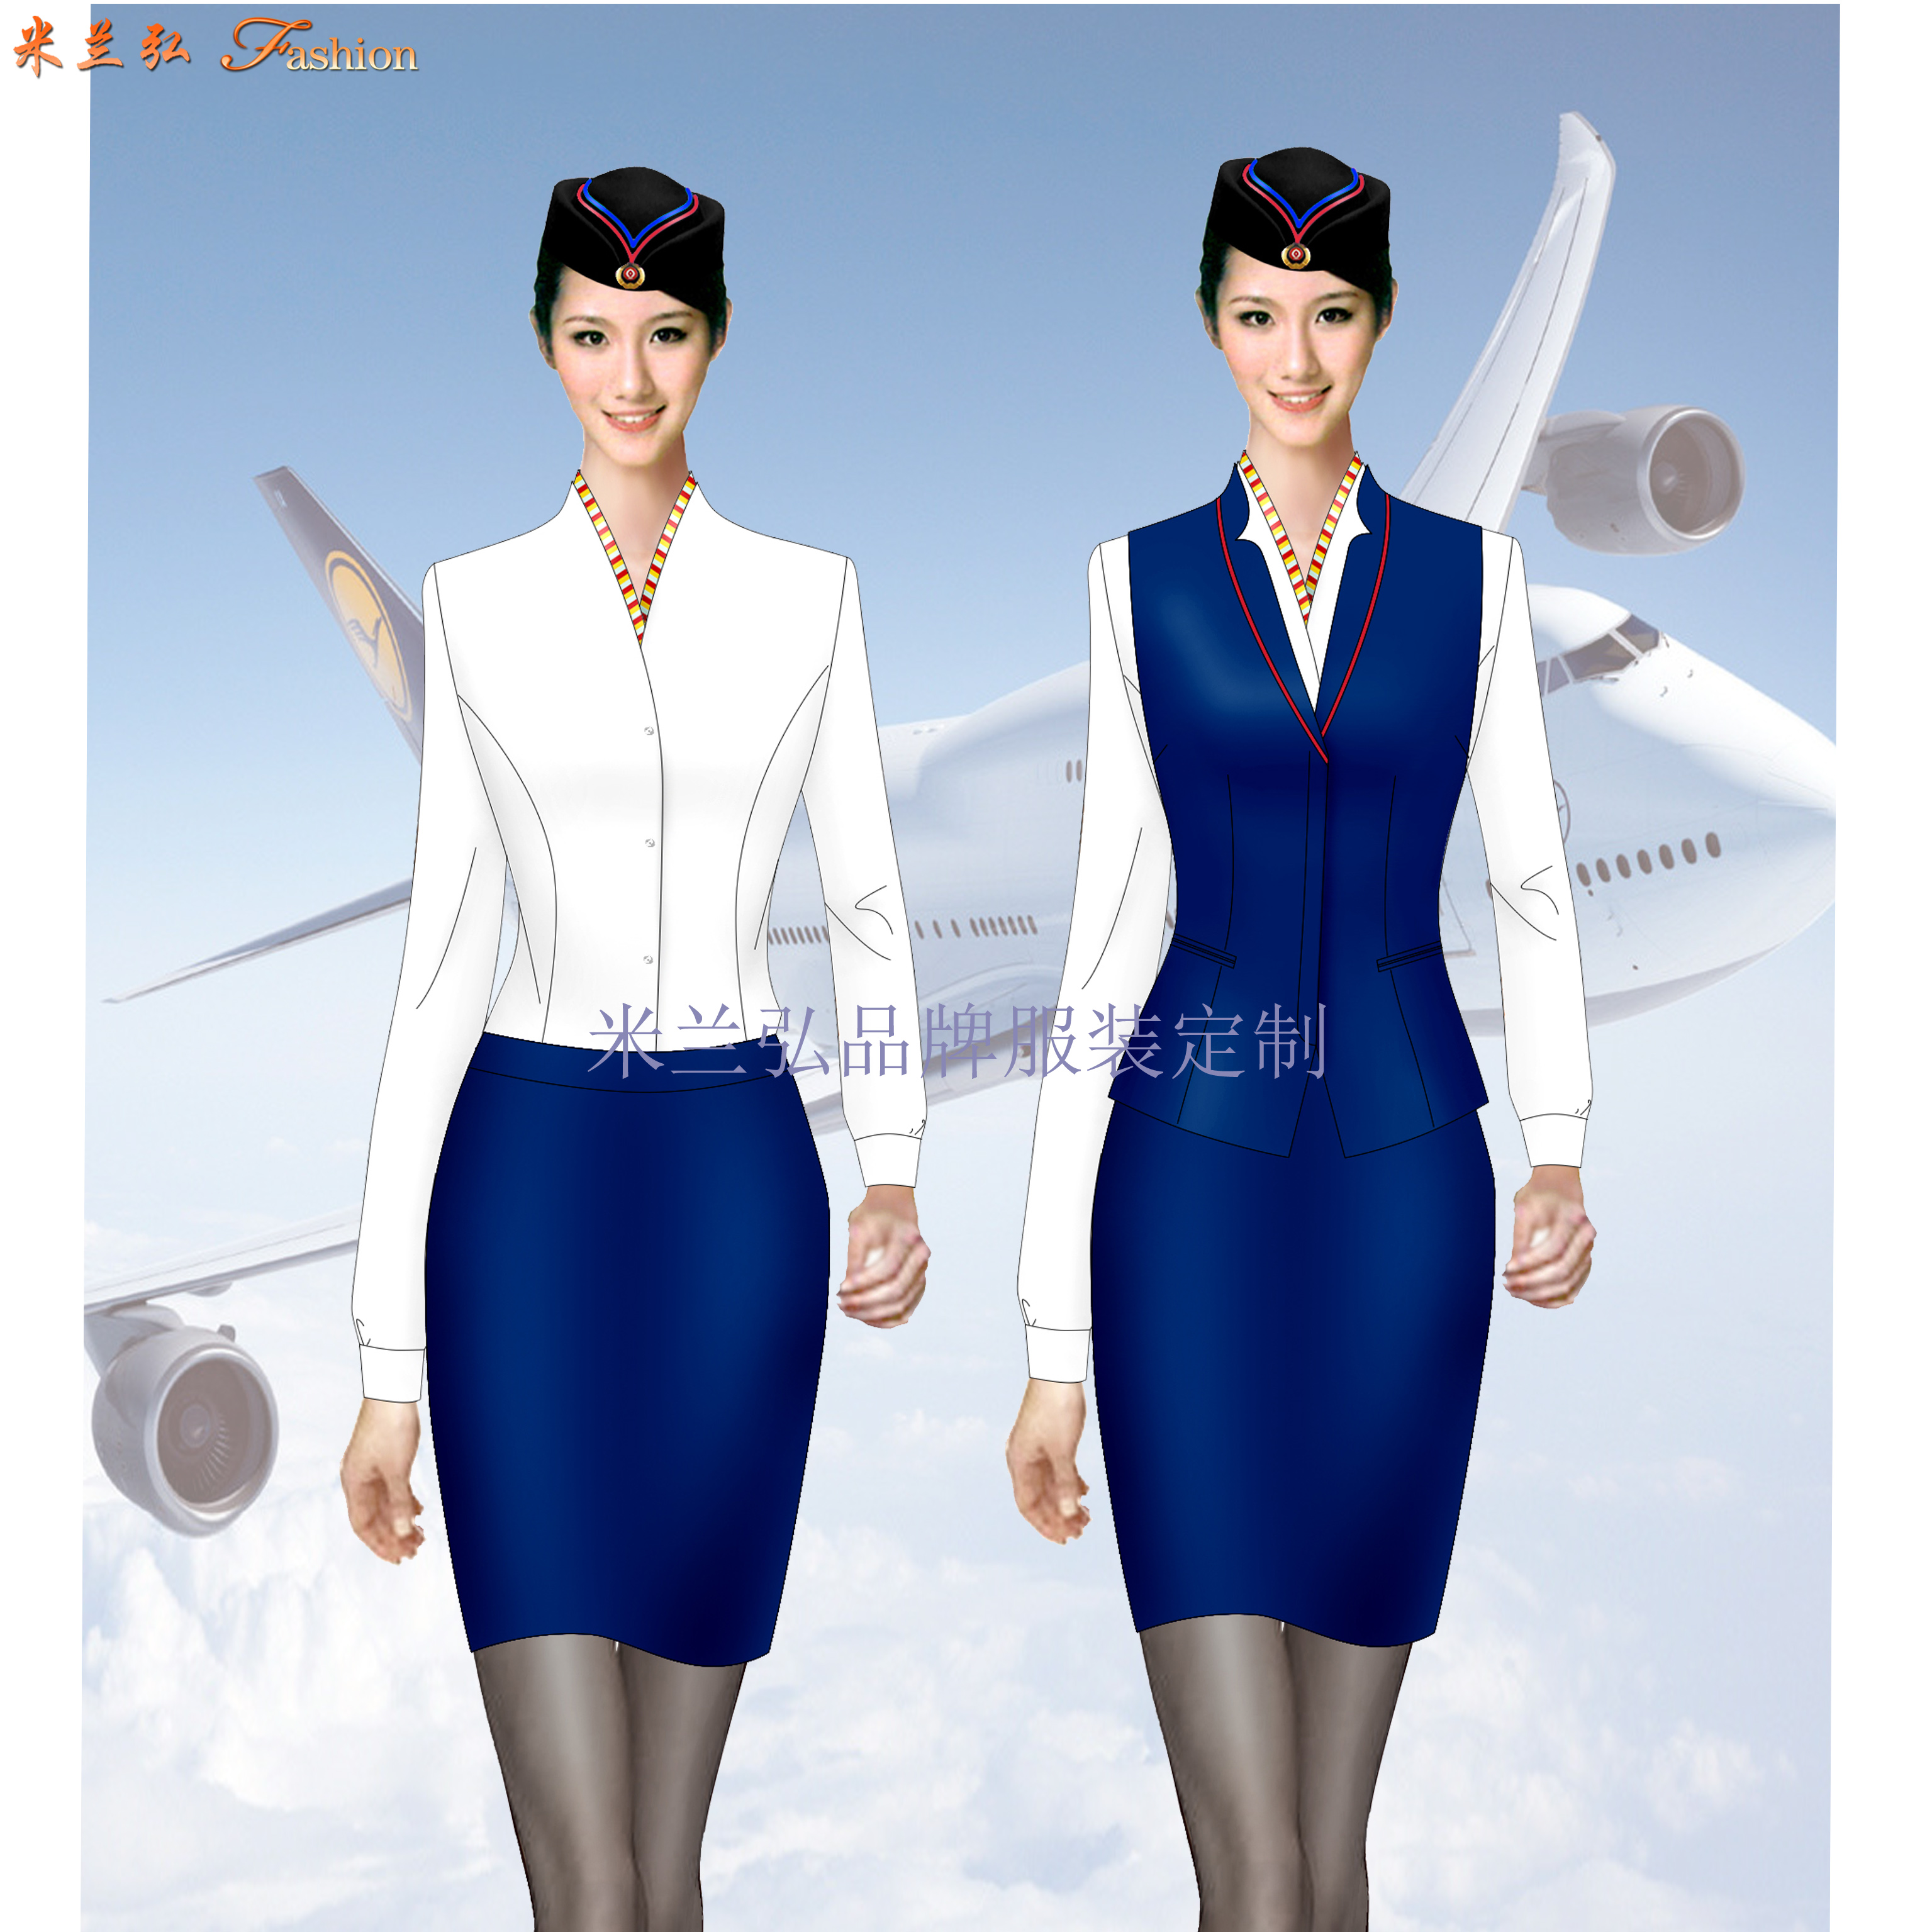 「北京空姐服定制」航空公司空姐服新款套裝圖片_價格_廠家-2